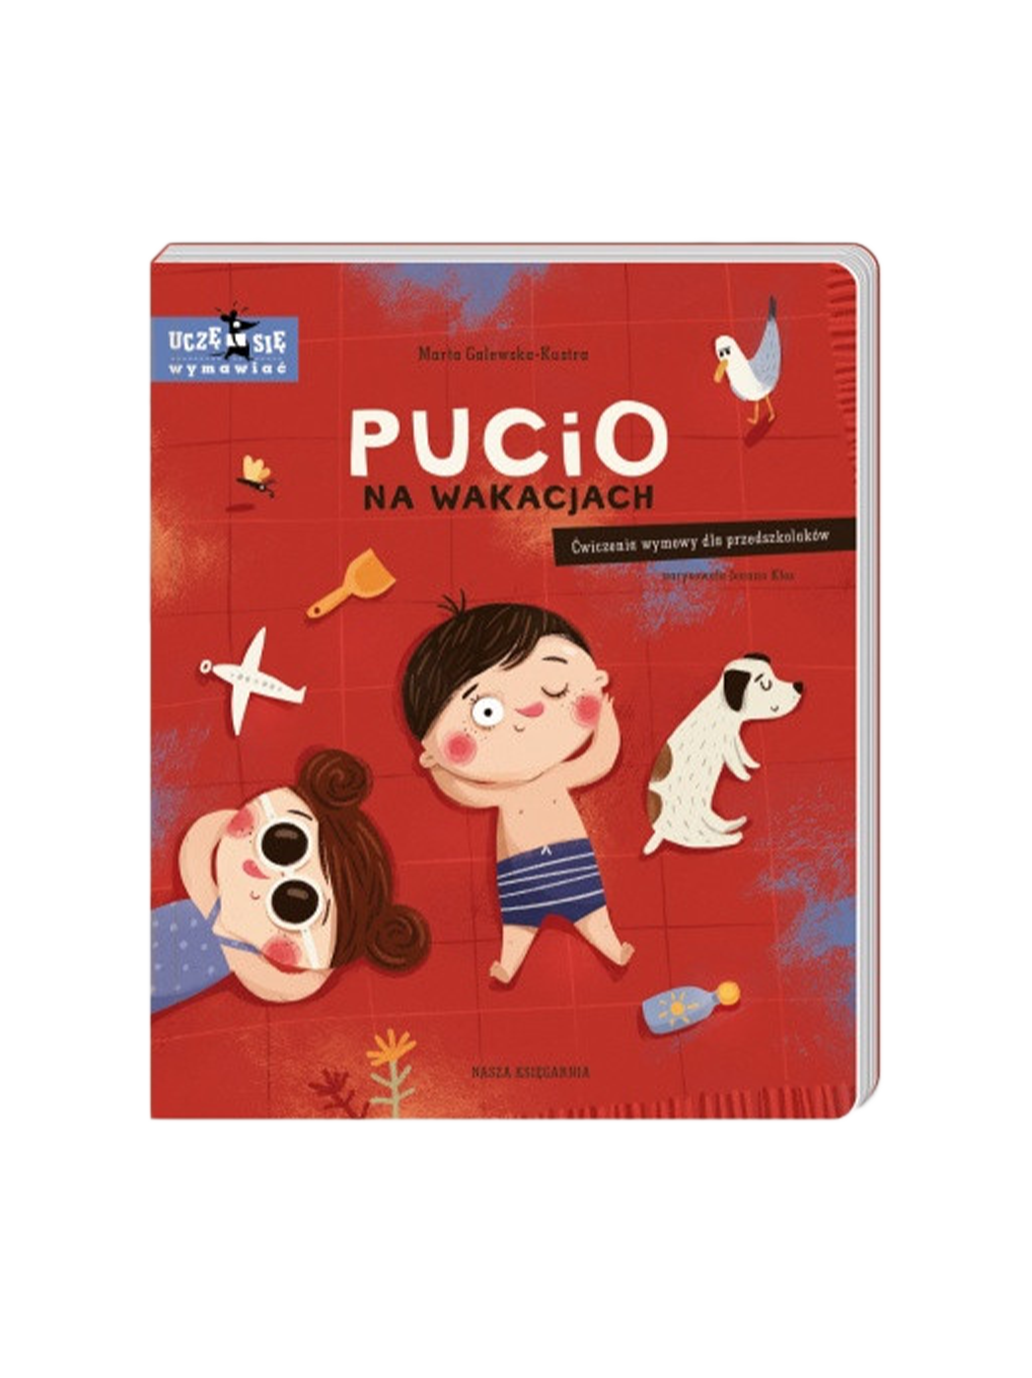 Pucio im Urlaub. Ausspracheübungen für Vorschulkinder